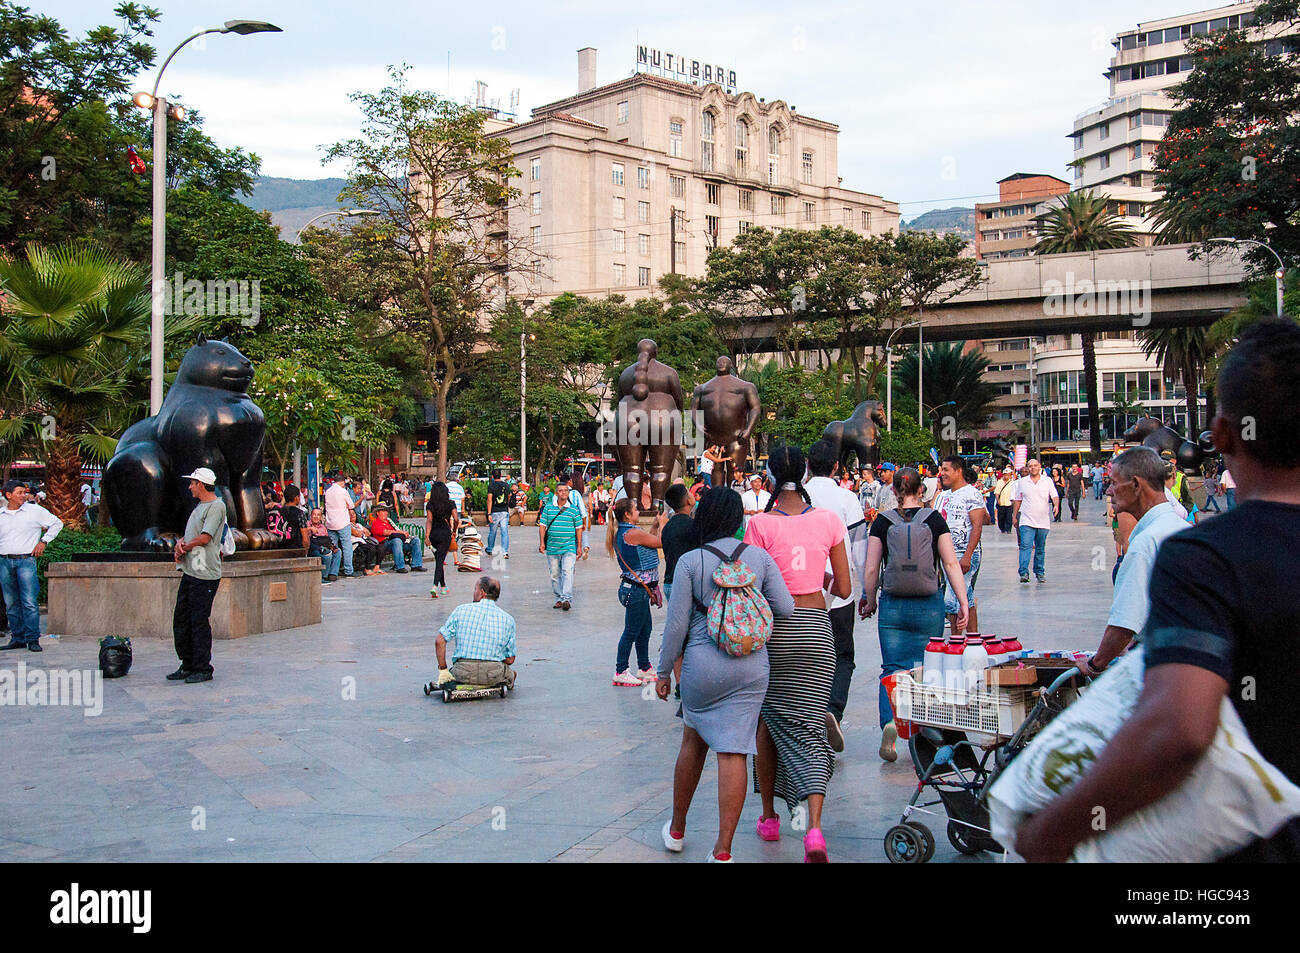 Botero Plaza in Medellin, Colombia Stock Photo